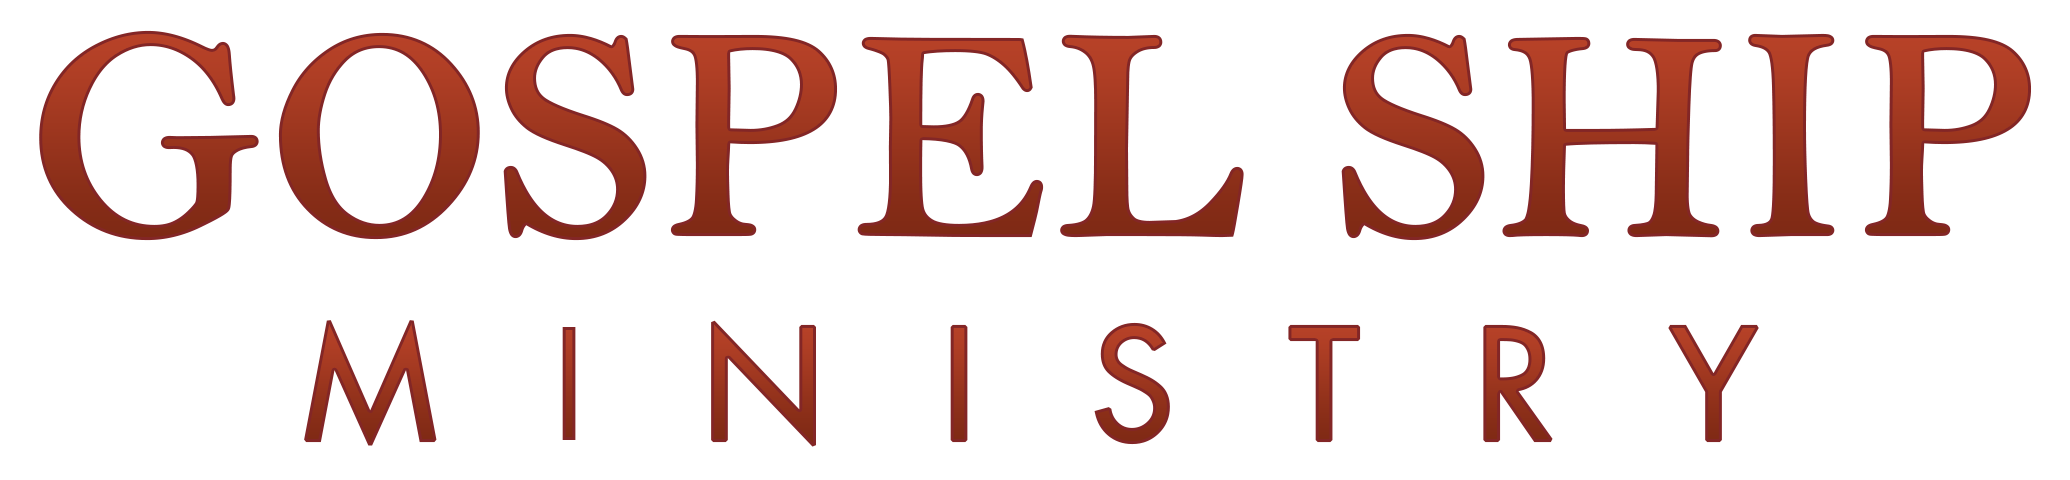 gospel ship logo